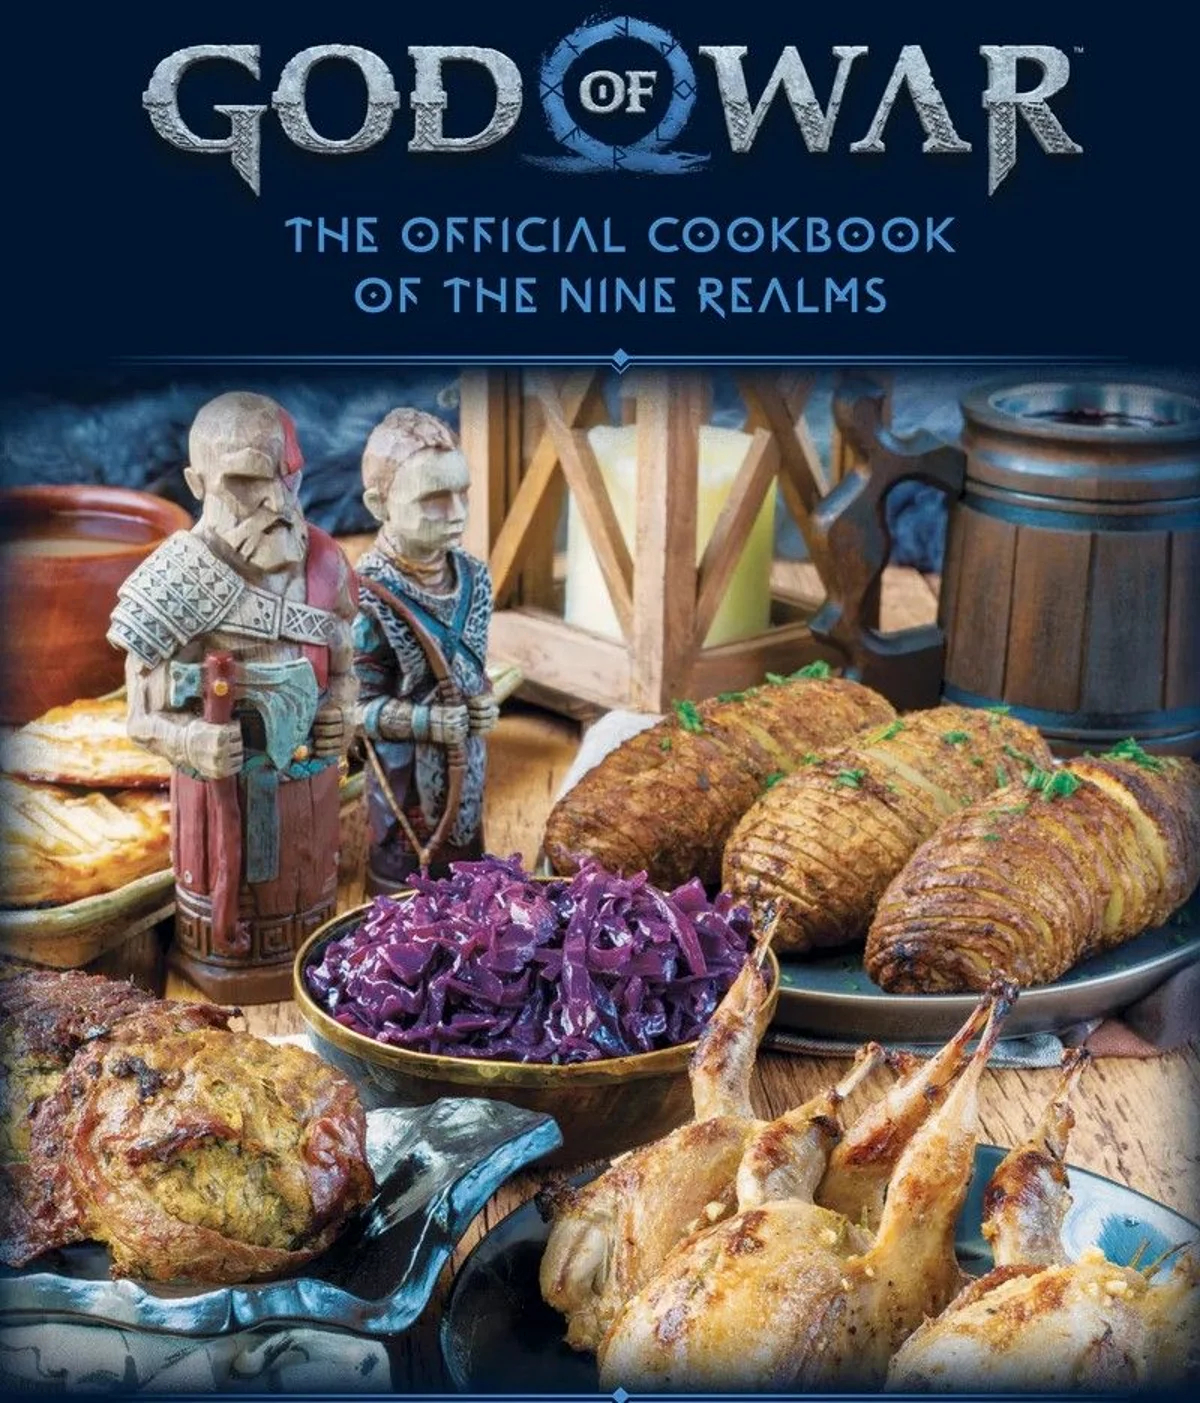 Издана книга с кулинарными рецептами по мотивам серии God of War